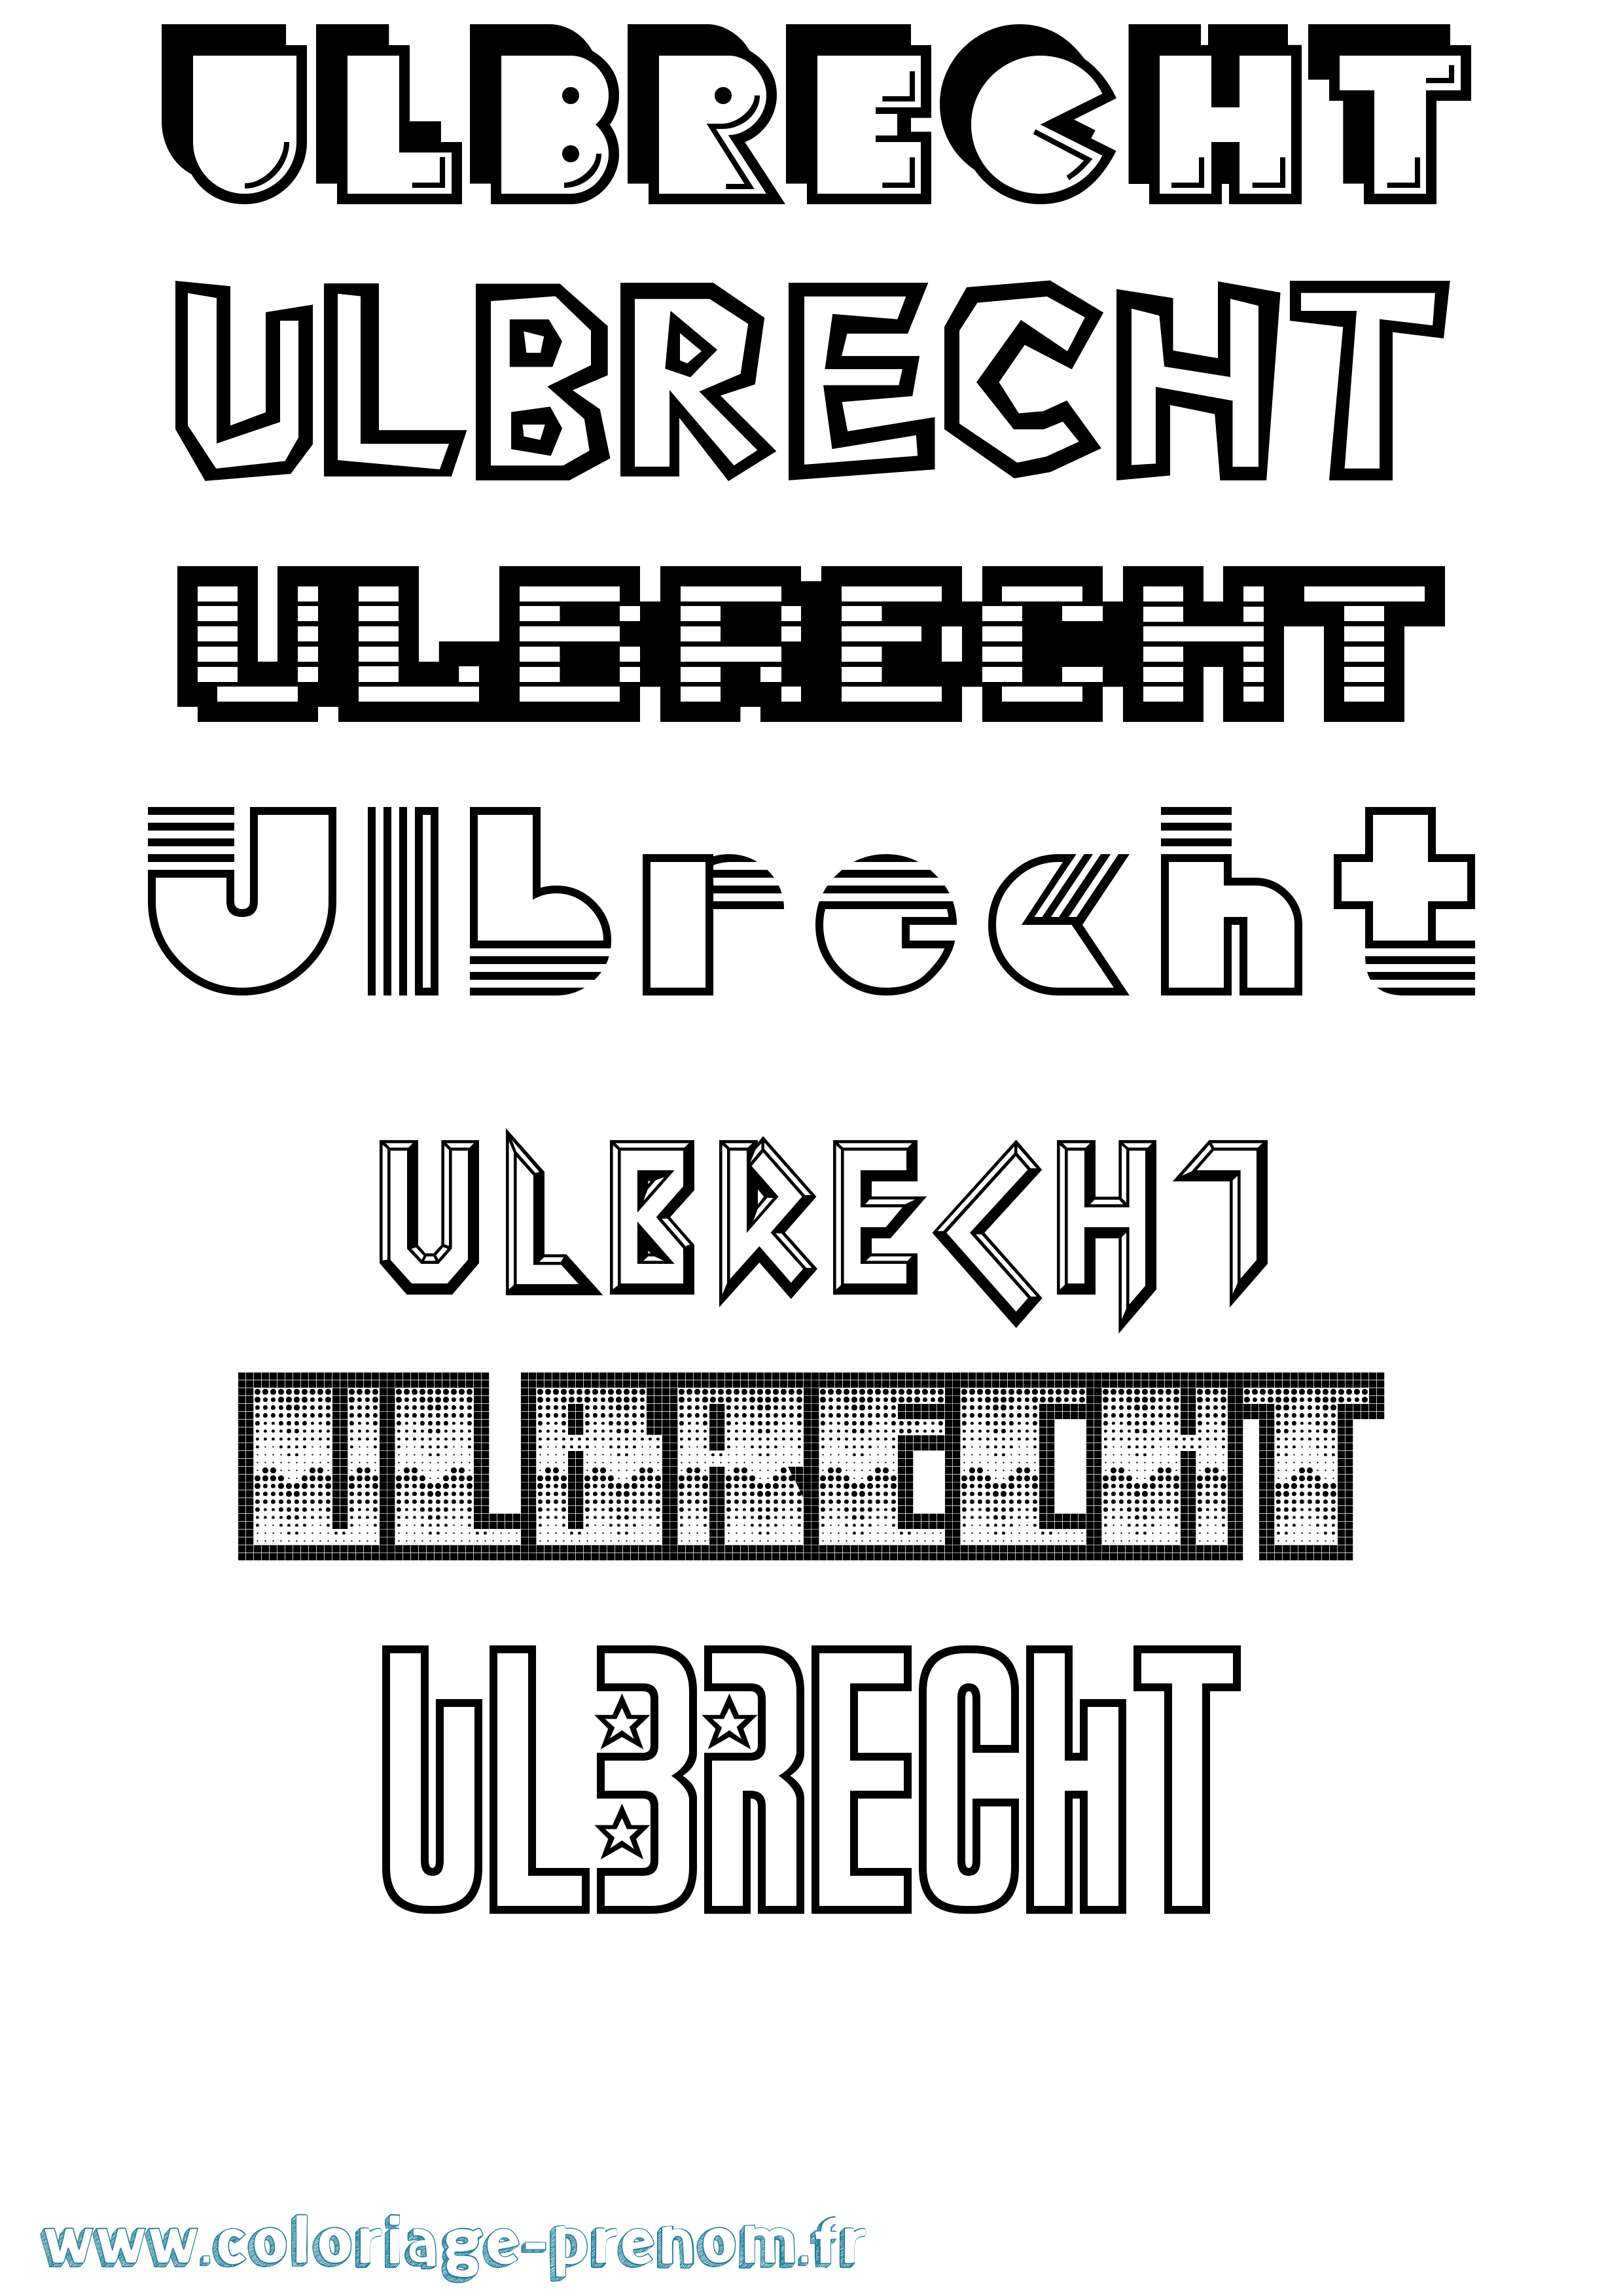 Coloriage prénom Ulbrecht Jeux Vidéos